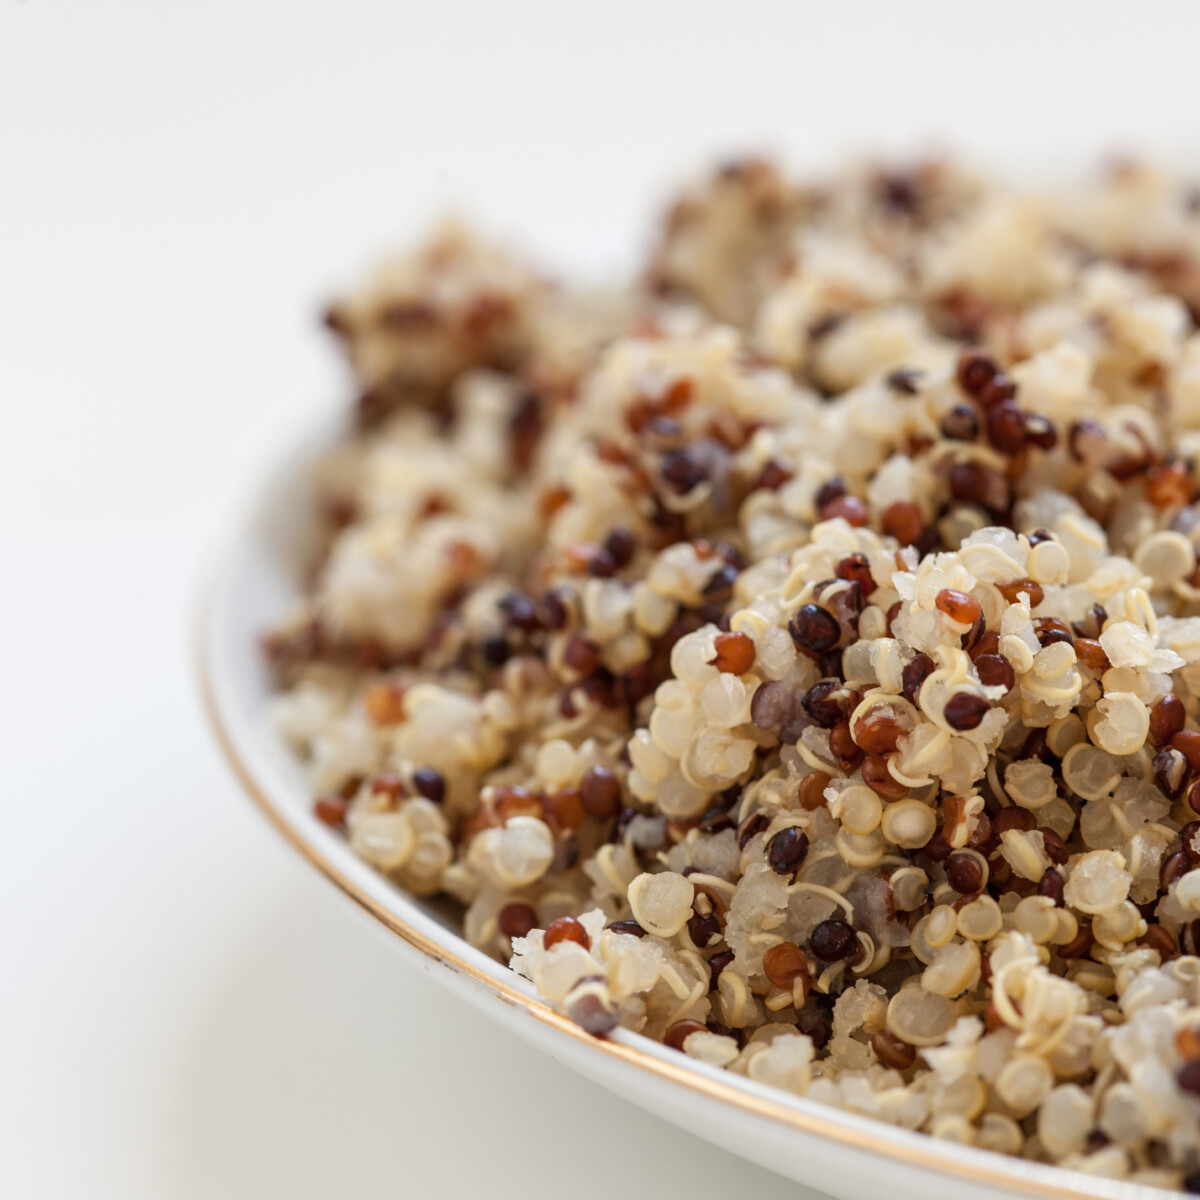 Így főzd: legyen tökéletes a quinoád minden egyes alkalommal